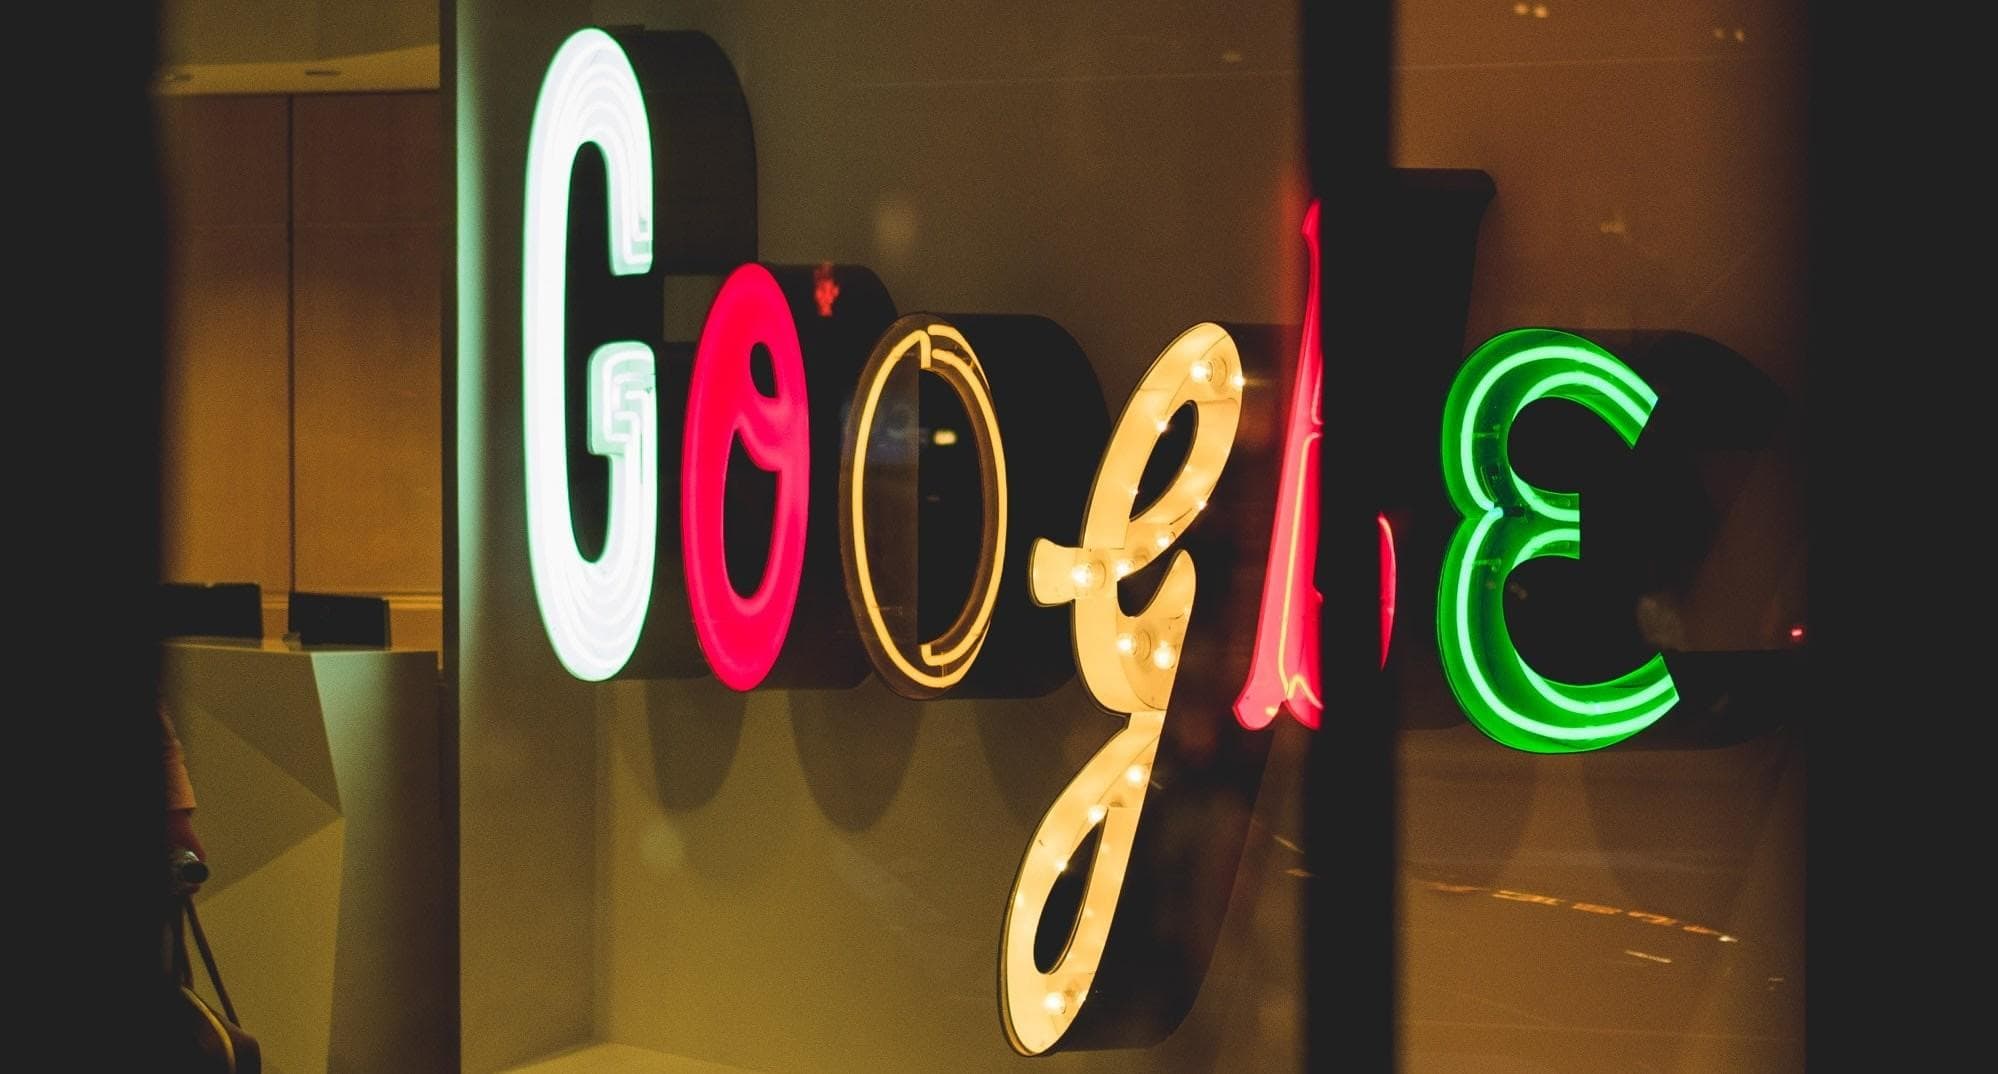 Logo de Google en una pared